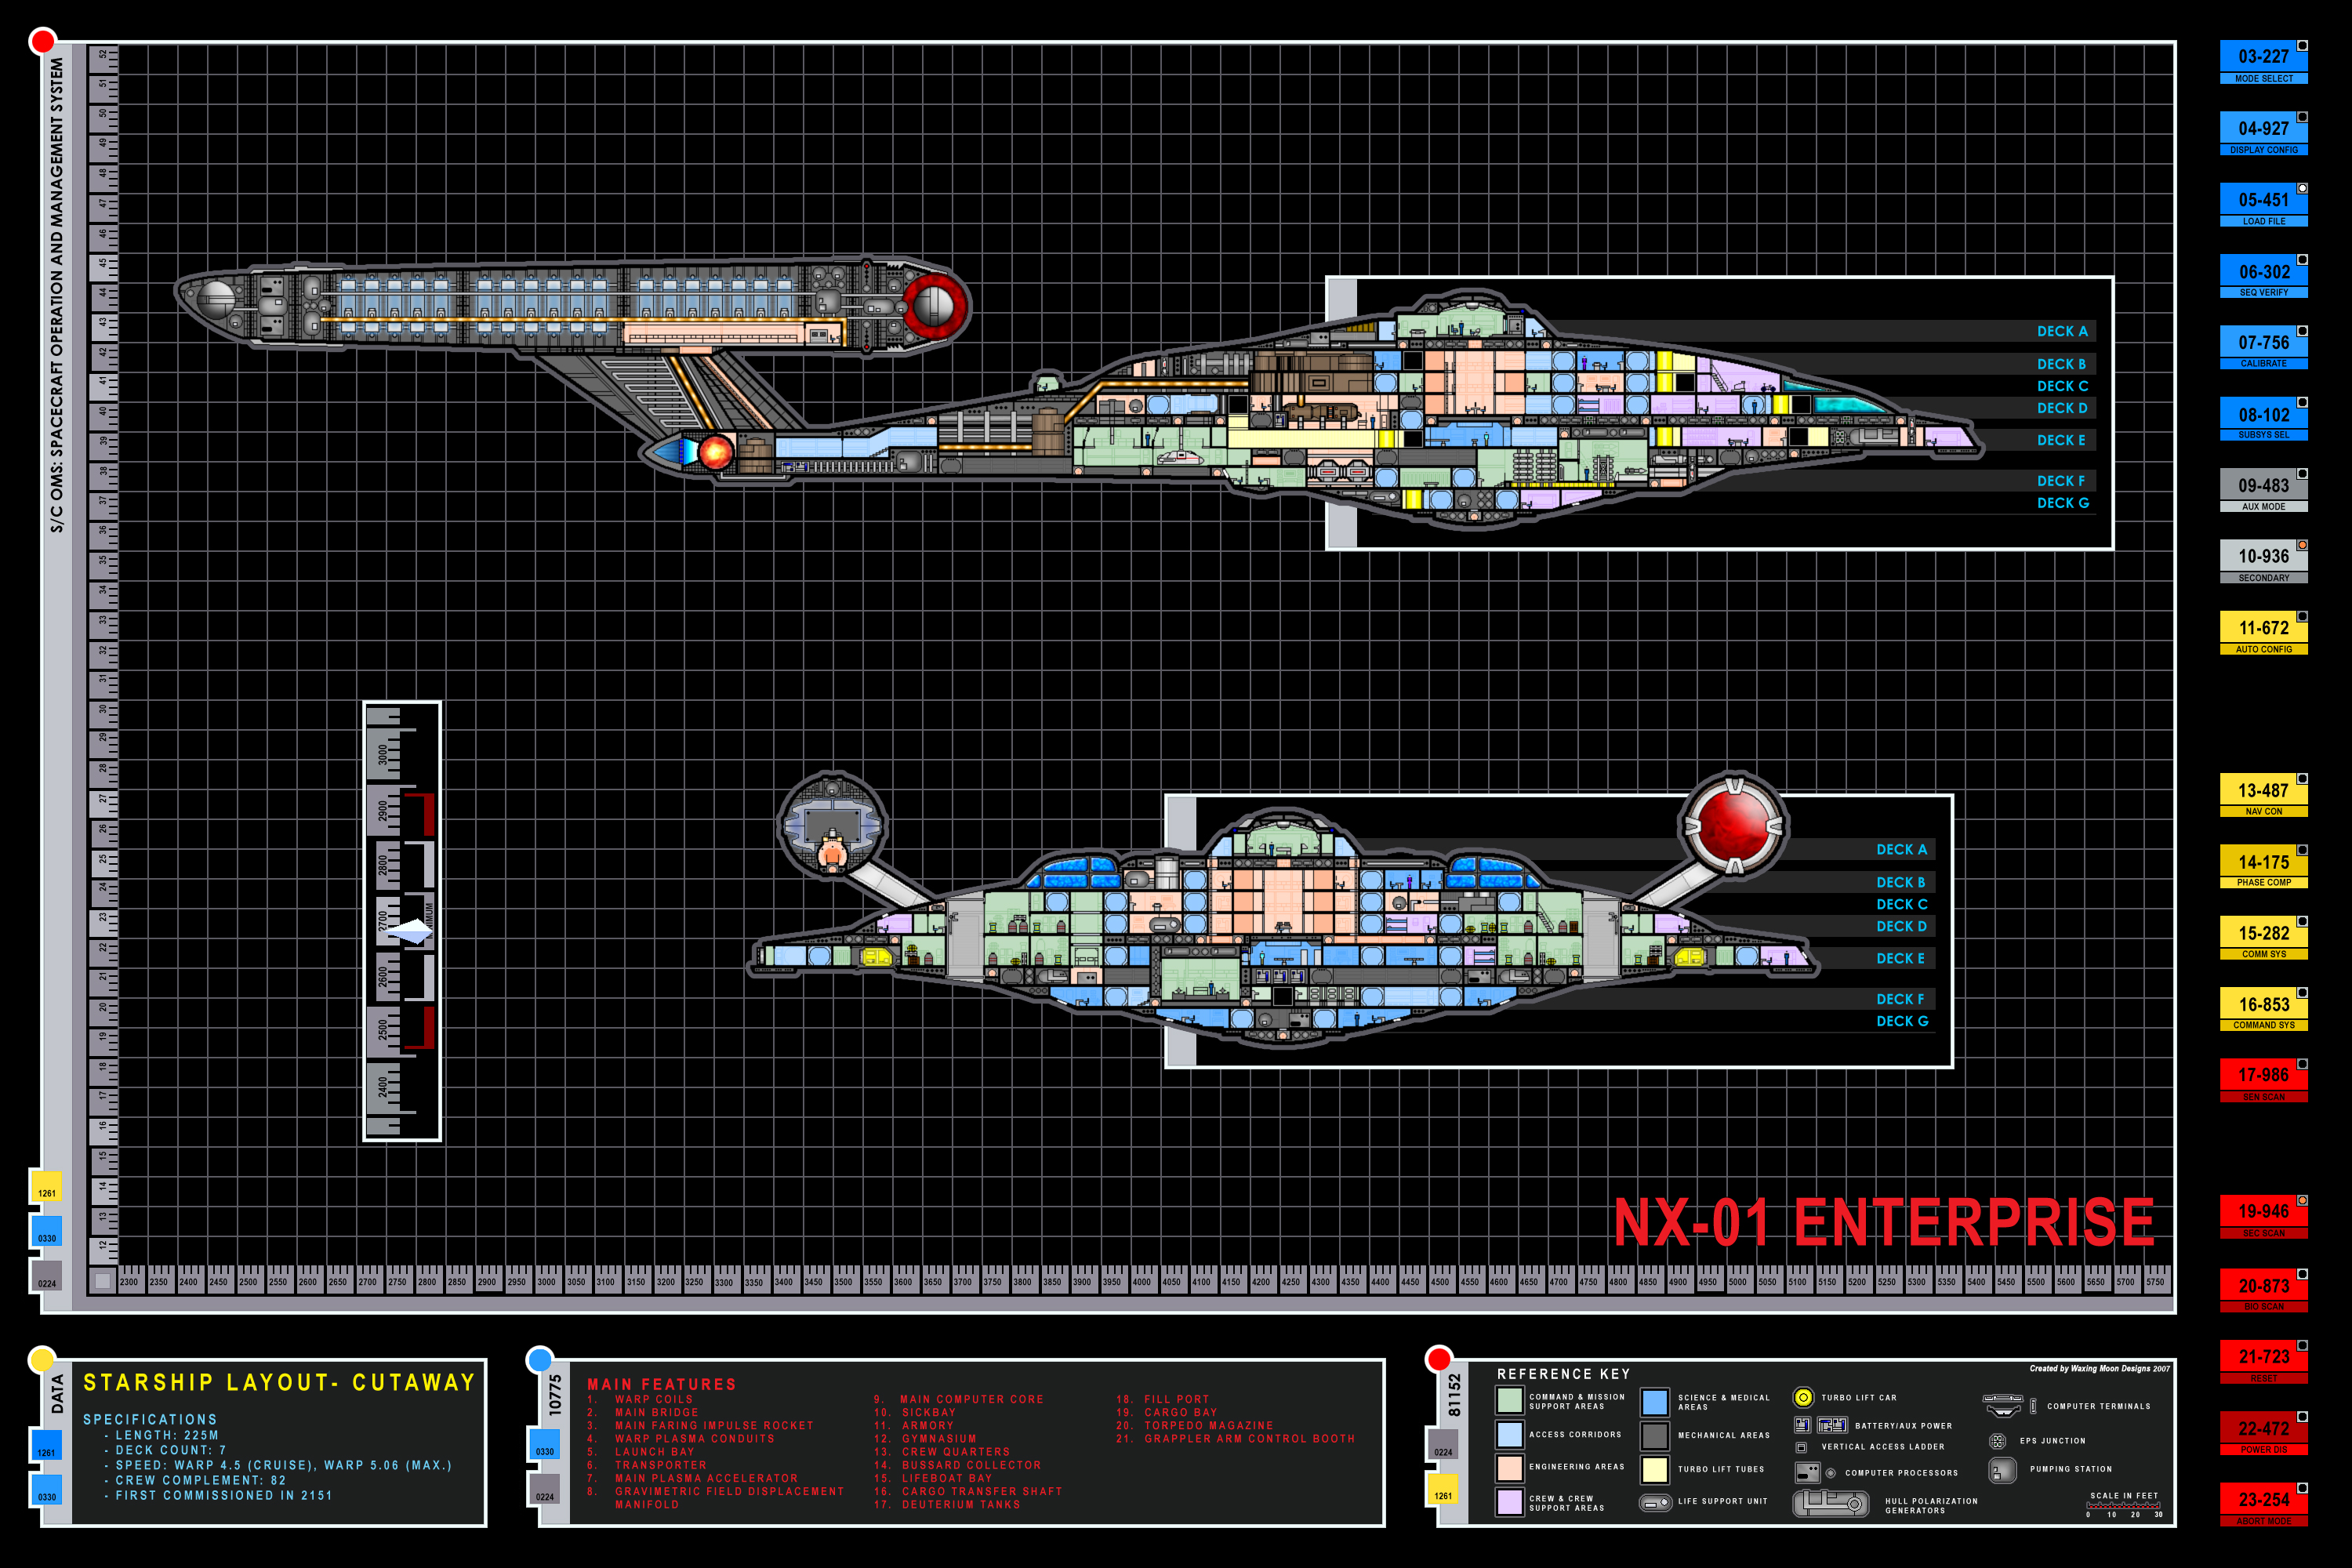 звездный путь, схема, Star TrekNext Generation, Star Trek схемы, Предприятие NX- 01 - обои на рабочий стол